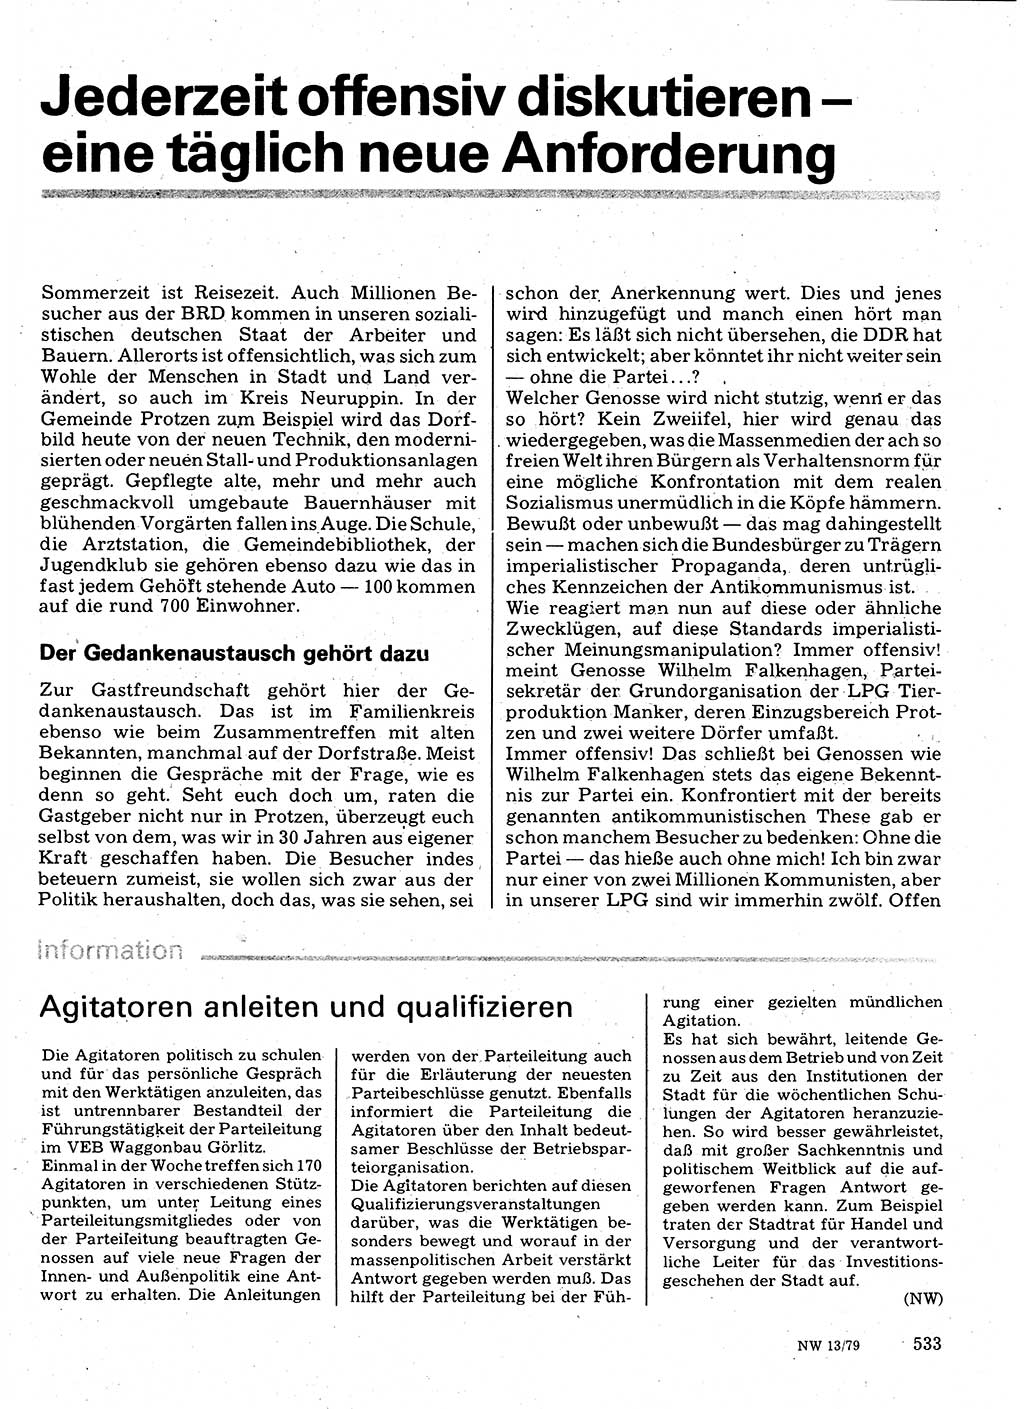 Neuer Weg (NW), Organ des Zentralkomitees (ZK) der SED (Sozialistische Einheitspartei Deutschlands) für Fragen des Parteilebens, 34. Jahrgang [Deutsche Demokratische Republik (DDR)] 1979, Seite 533 (NW ZK SED DDR 1979, S. 533)